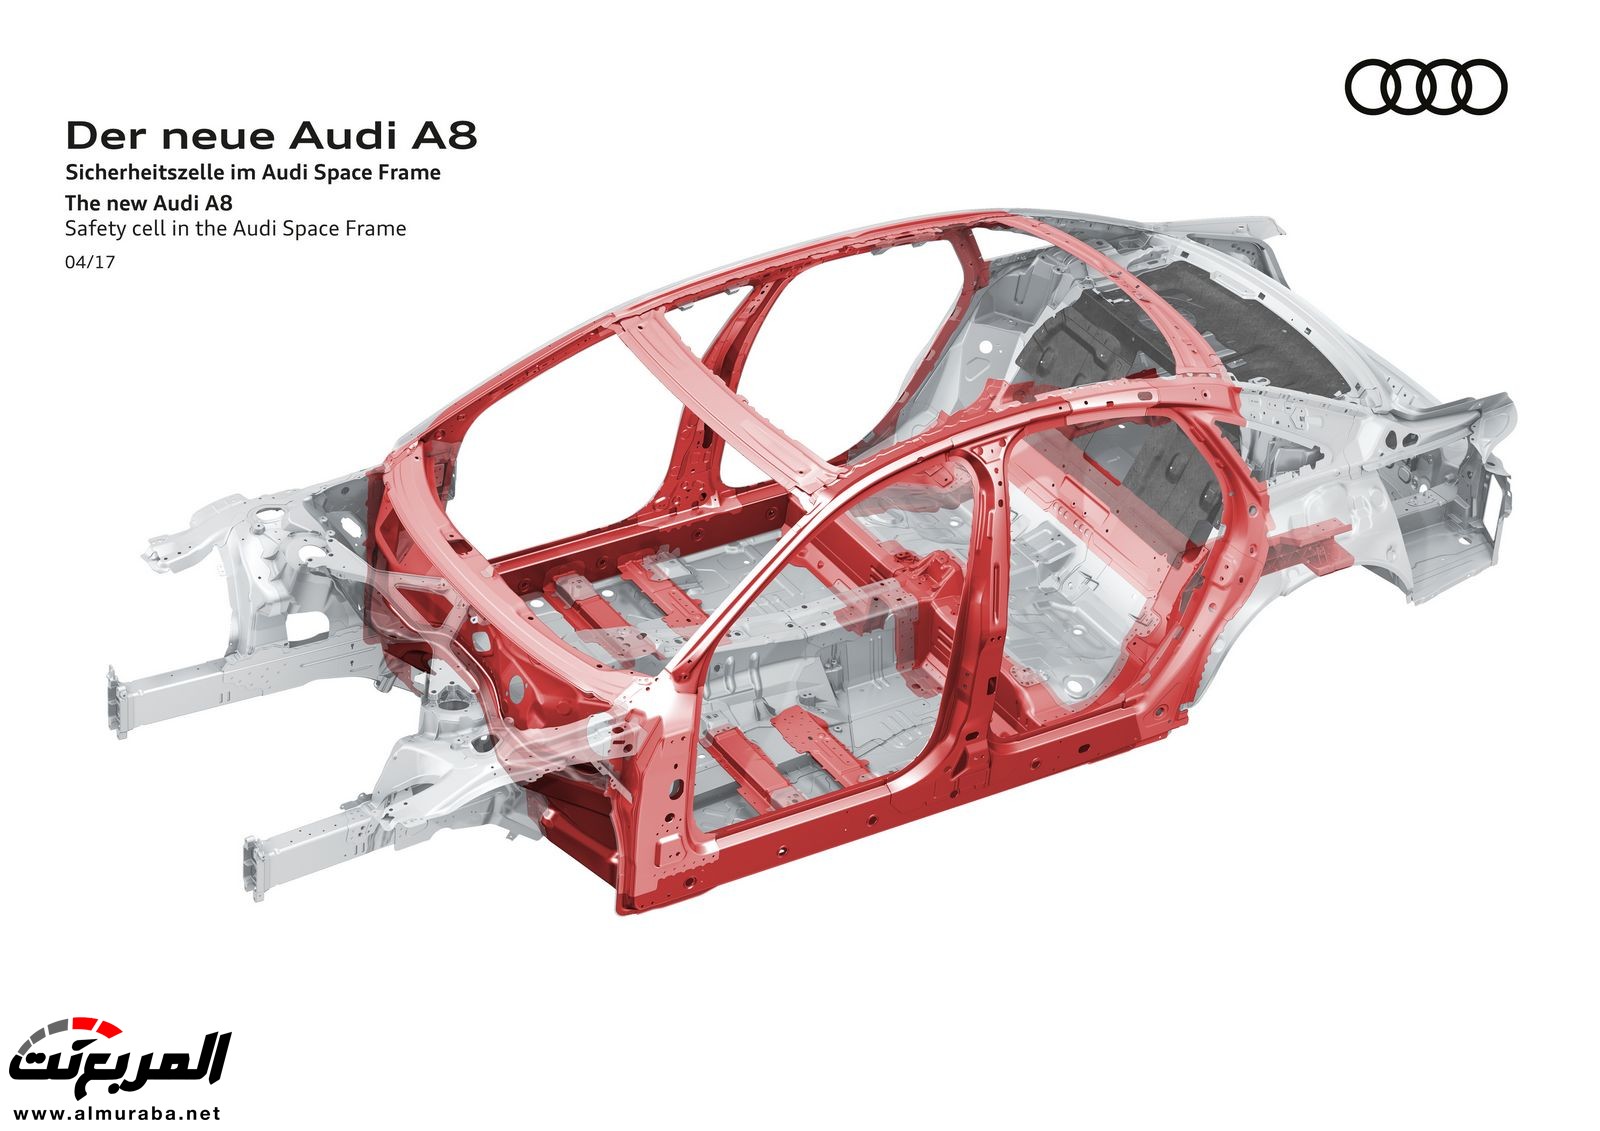 أودي A8 2018 الجديدة كلياً تكشف نفسها بتصميم وتقنيات متطورة "معلومات + 100 صورة" Audi A8 53